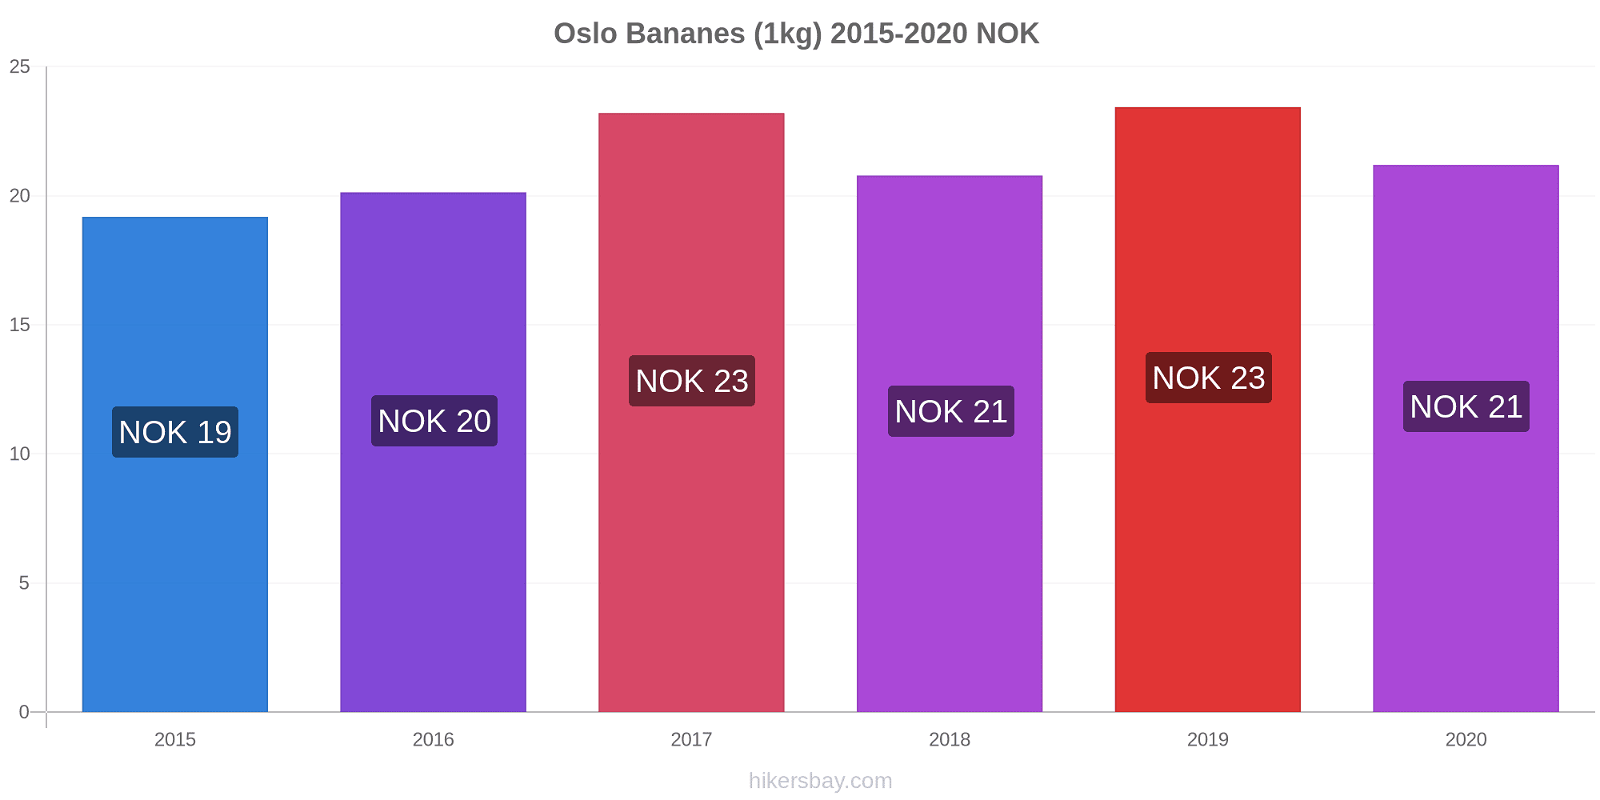 Oslo changements de prix Bananes (1kg) hikersbay.com